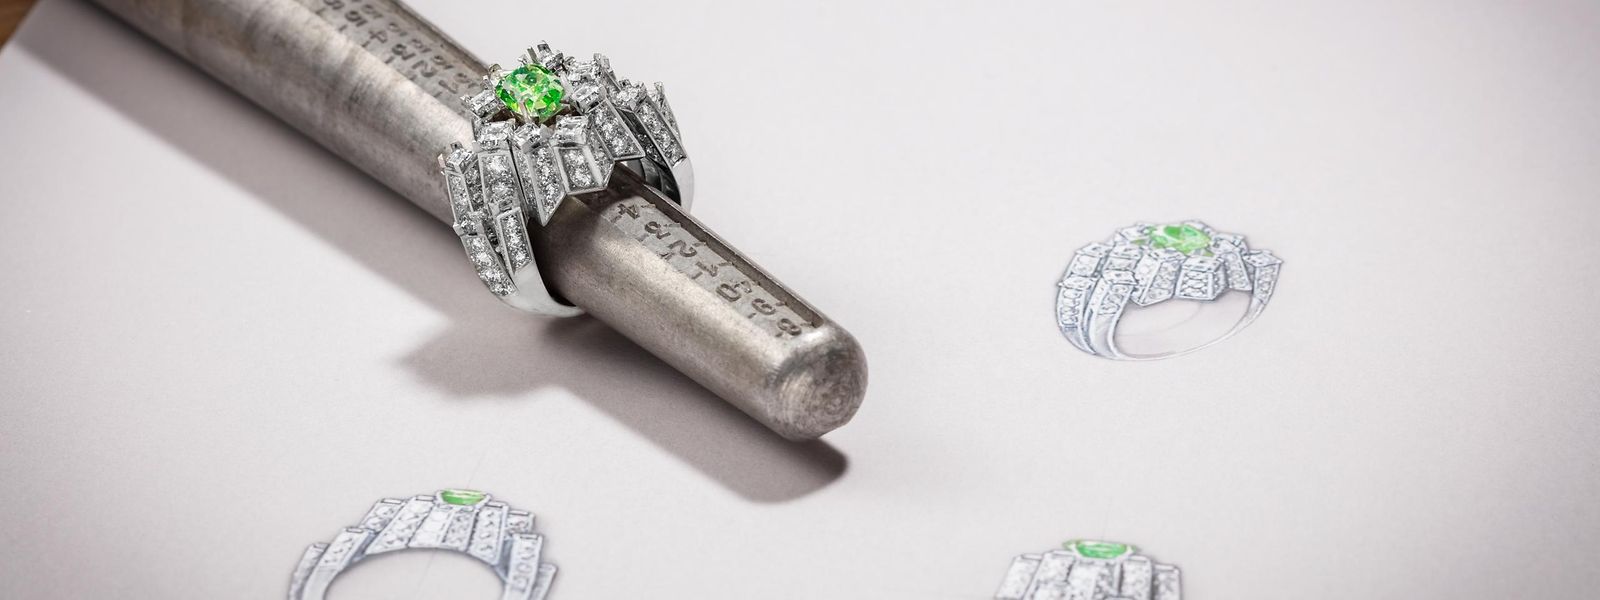 Die Haute-Joaillerie-Kollektion wird ergänzt durch eine Serie von sieben Ringen. Hier zu sehen: der Ring „Viridia“ aus Platin, weißen Diamanten und einem auffälligen grünen Diamanten.